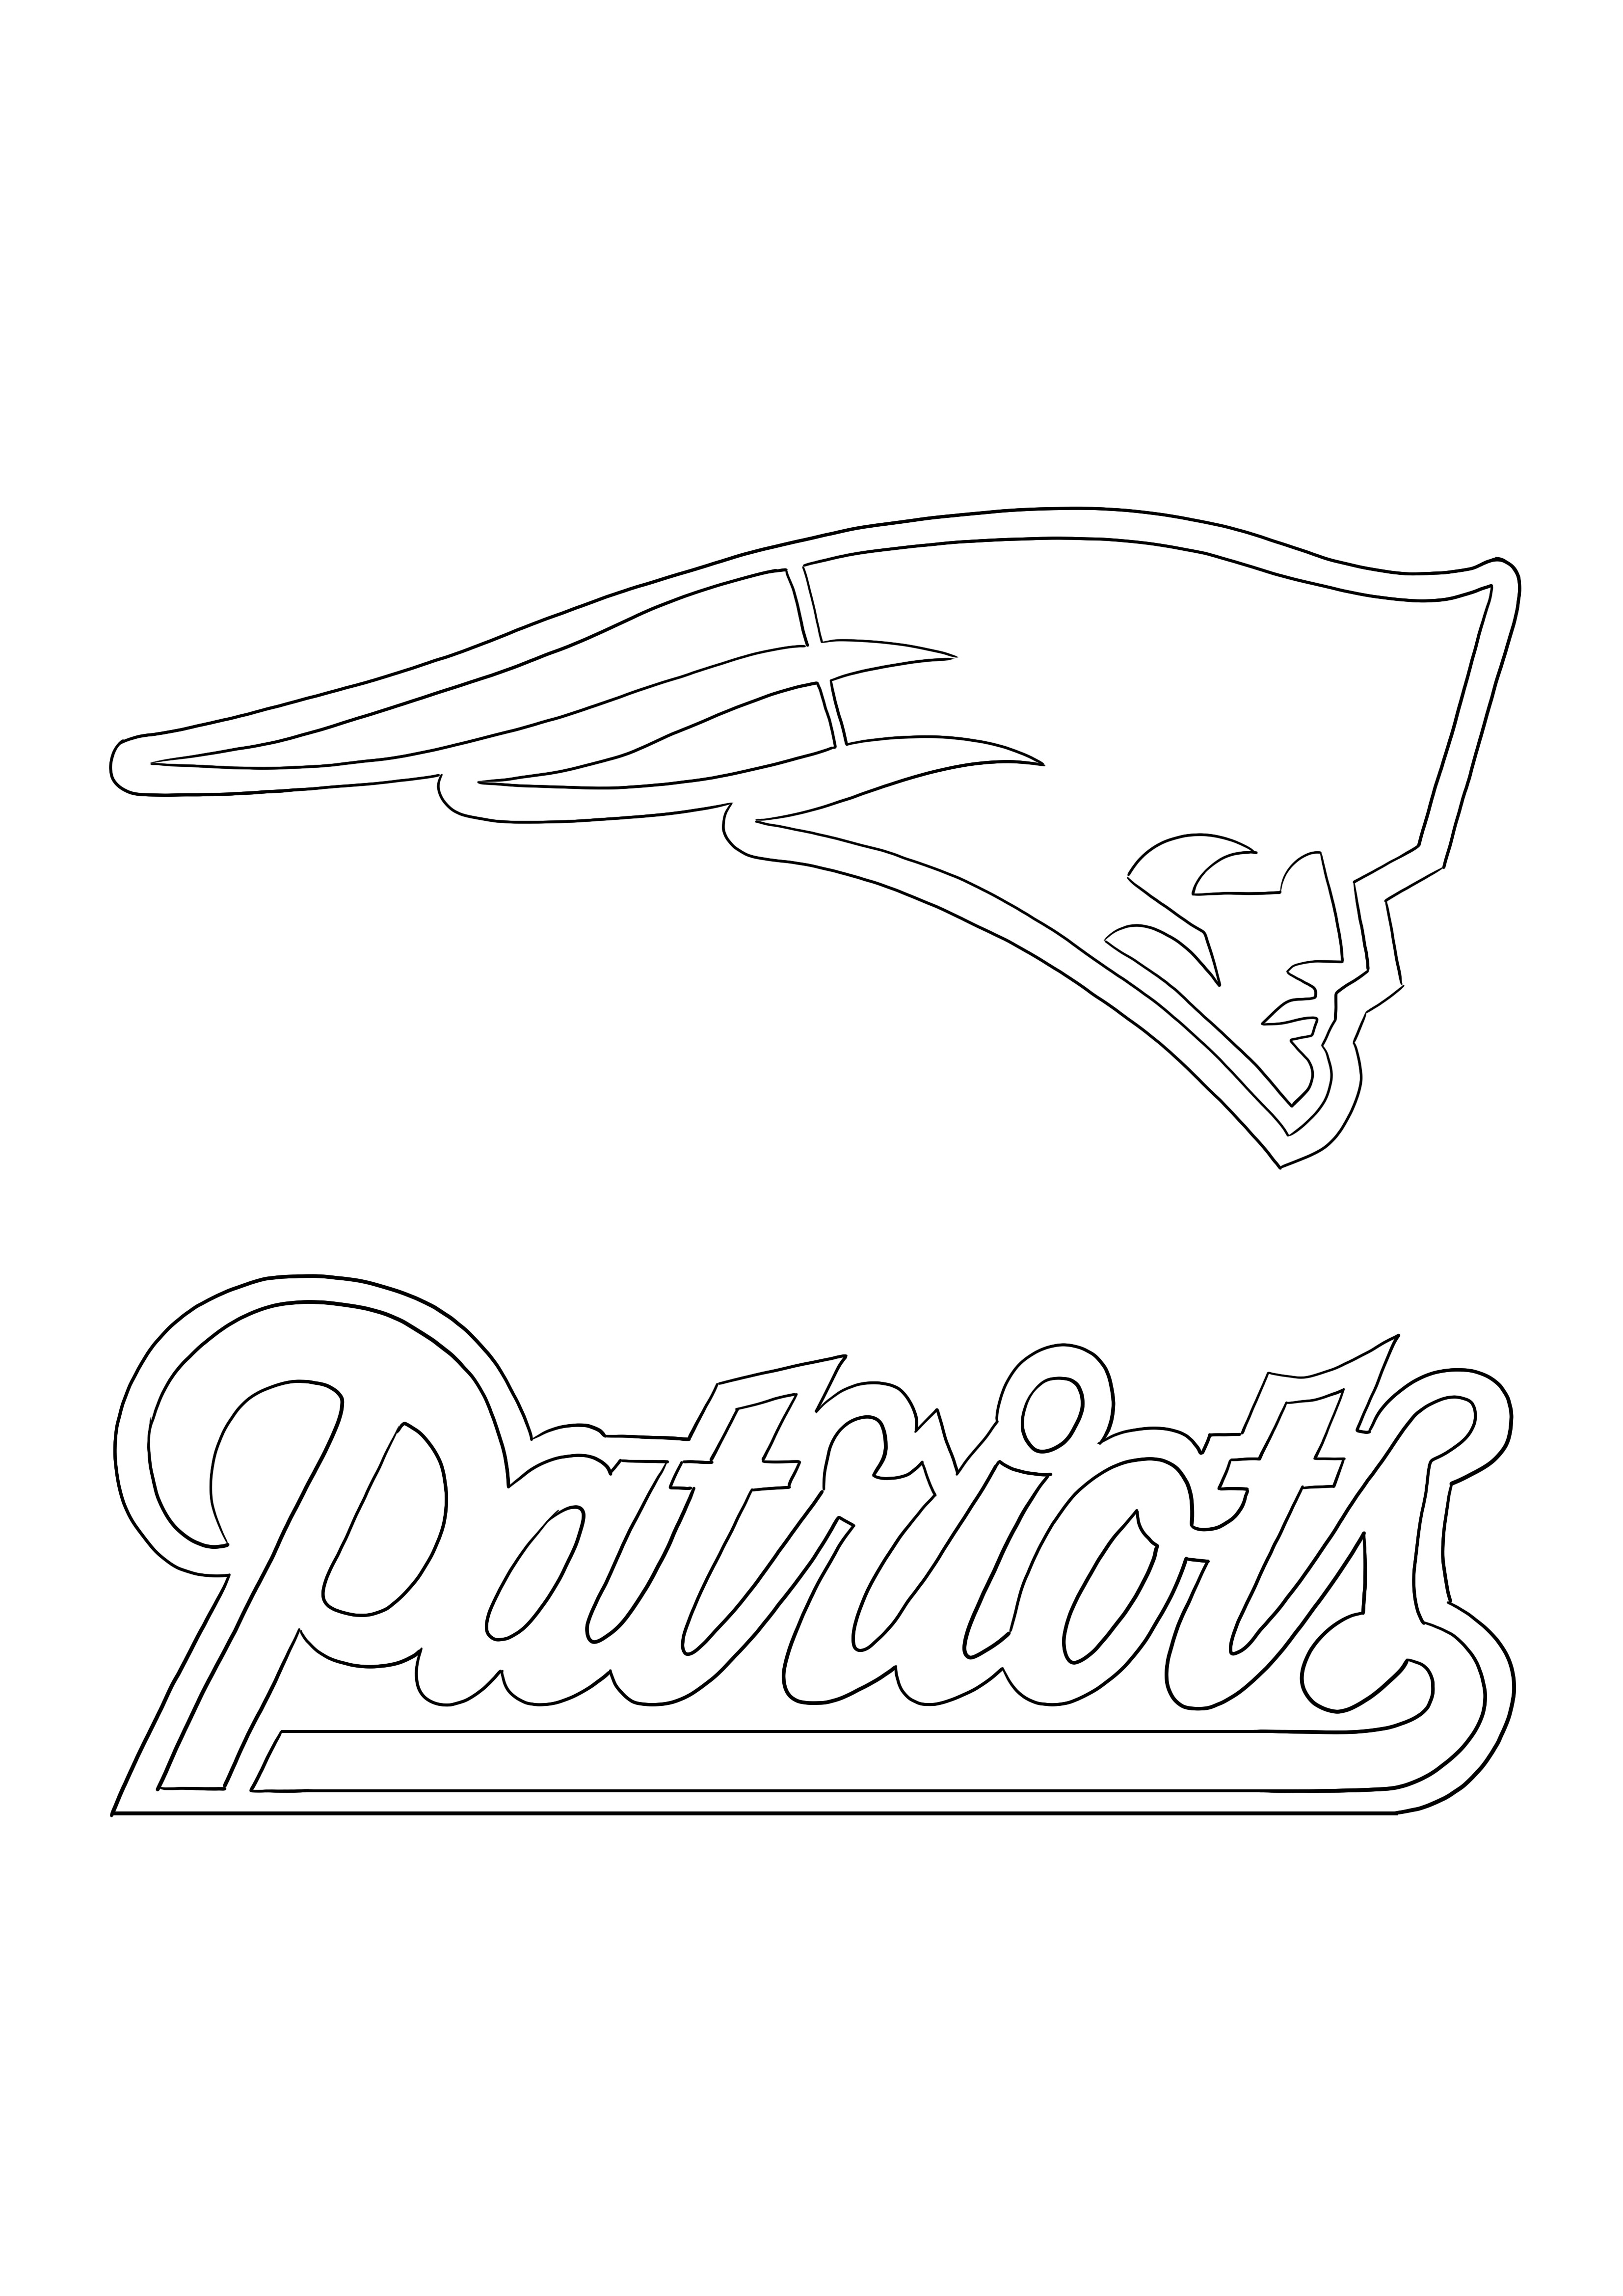 Pewarnaan logo patriot dan unduh gratis